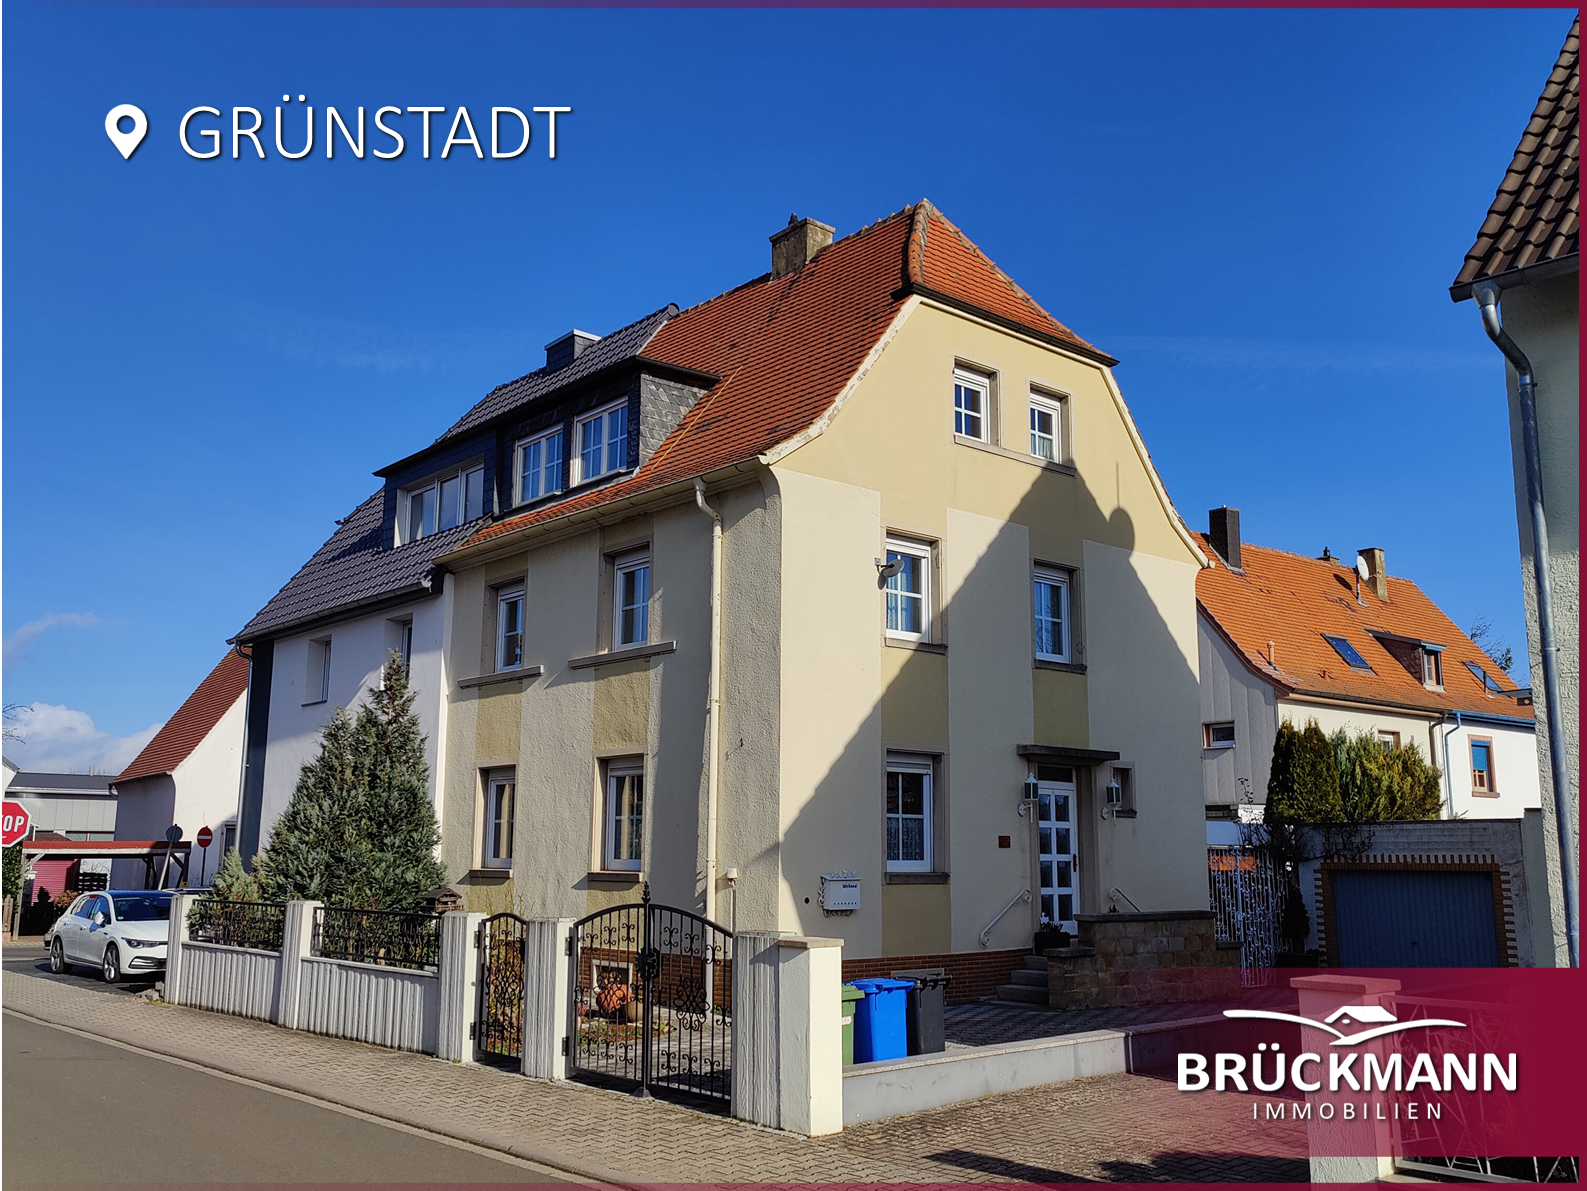 Schöne, gepflegte DHH mit Garten & Garage in guter zentraler Lage von Grünstadt!, 67269 Grünstadt, Doppelhaushälfte